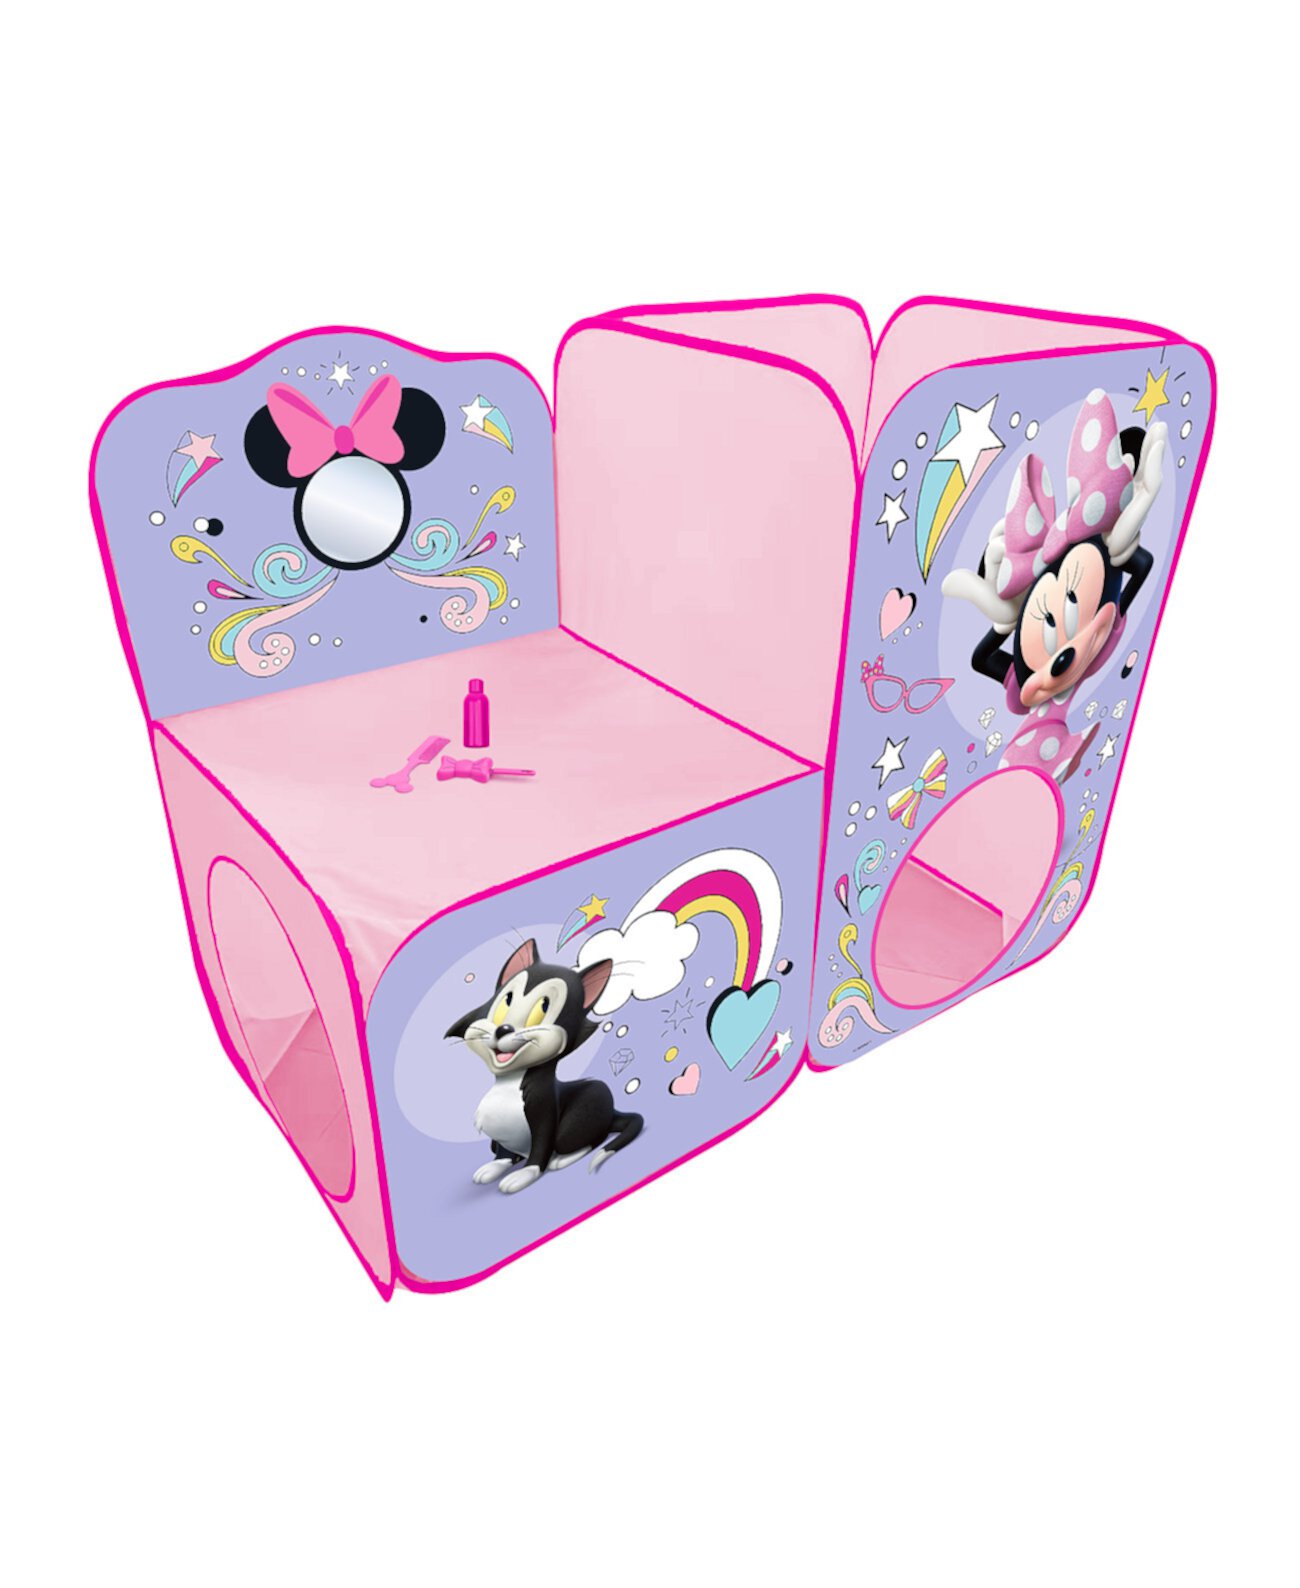 Специальная палатка Minnie Mouse